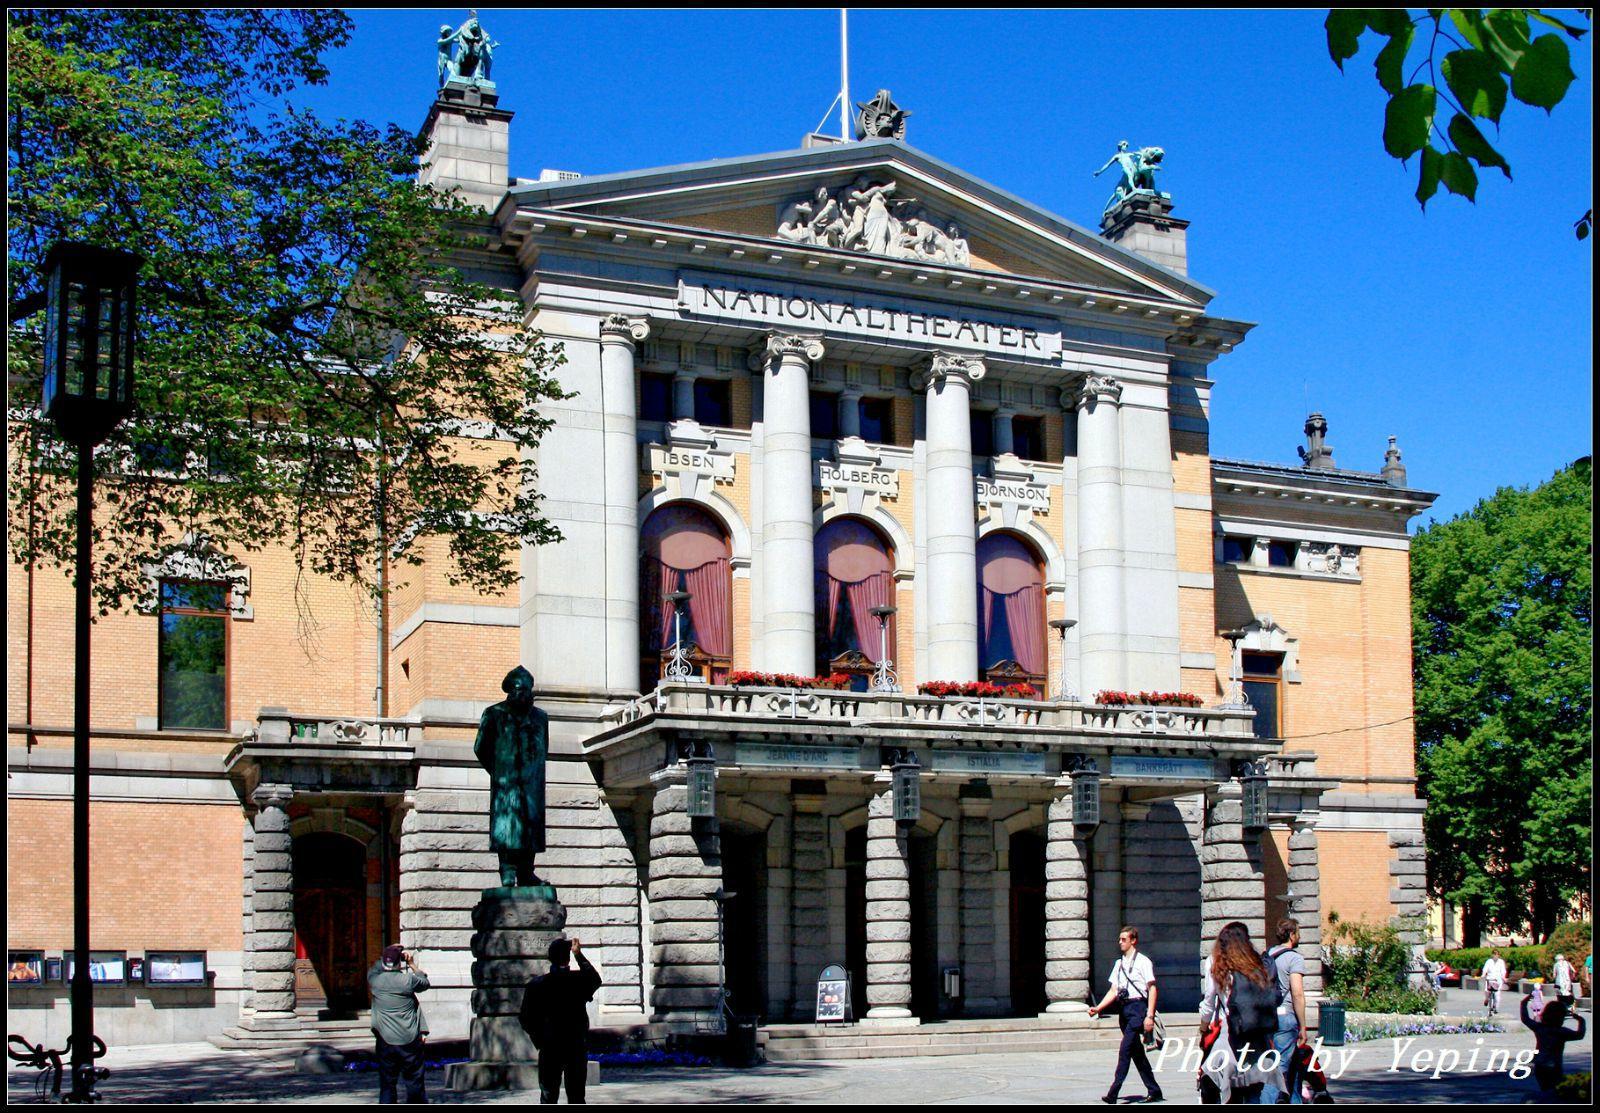 挪威国家剧院是奥斯陆最主要的戏剧剧院,建于1899年,是一座有着洛